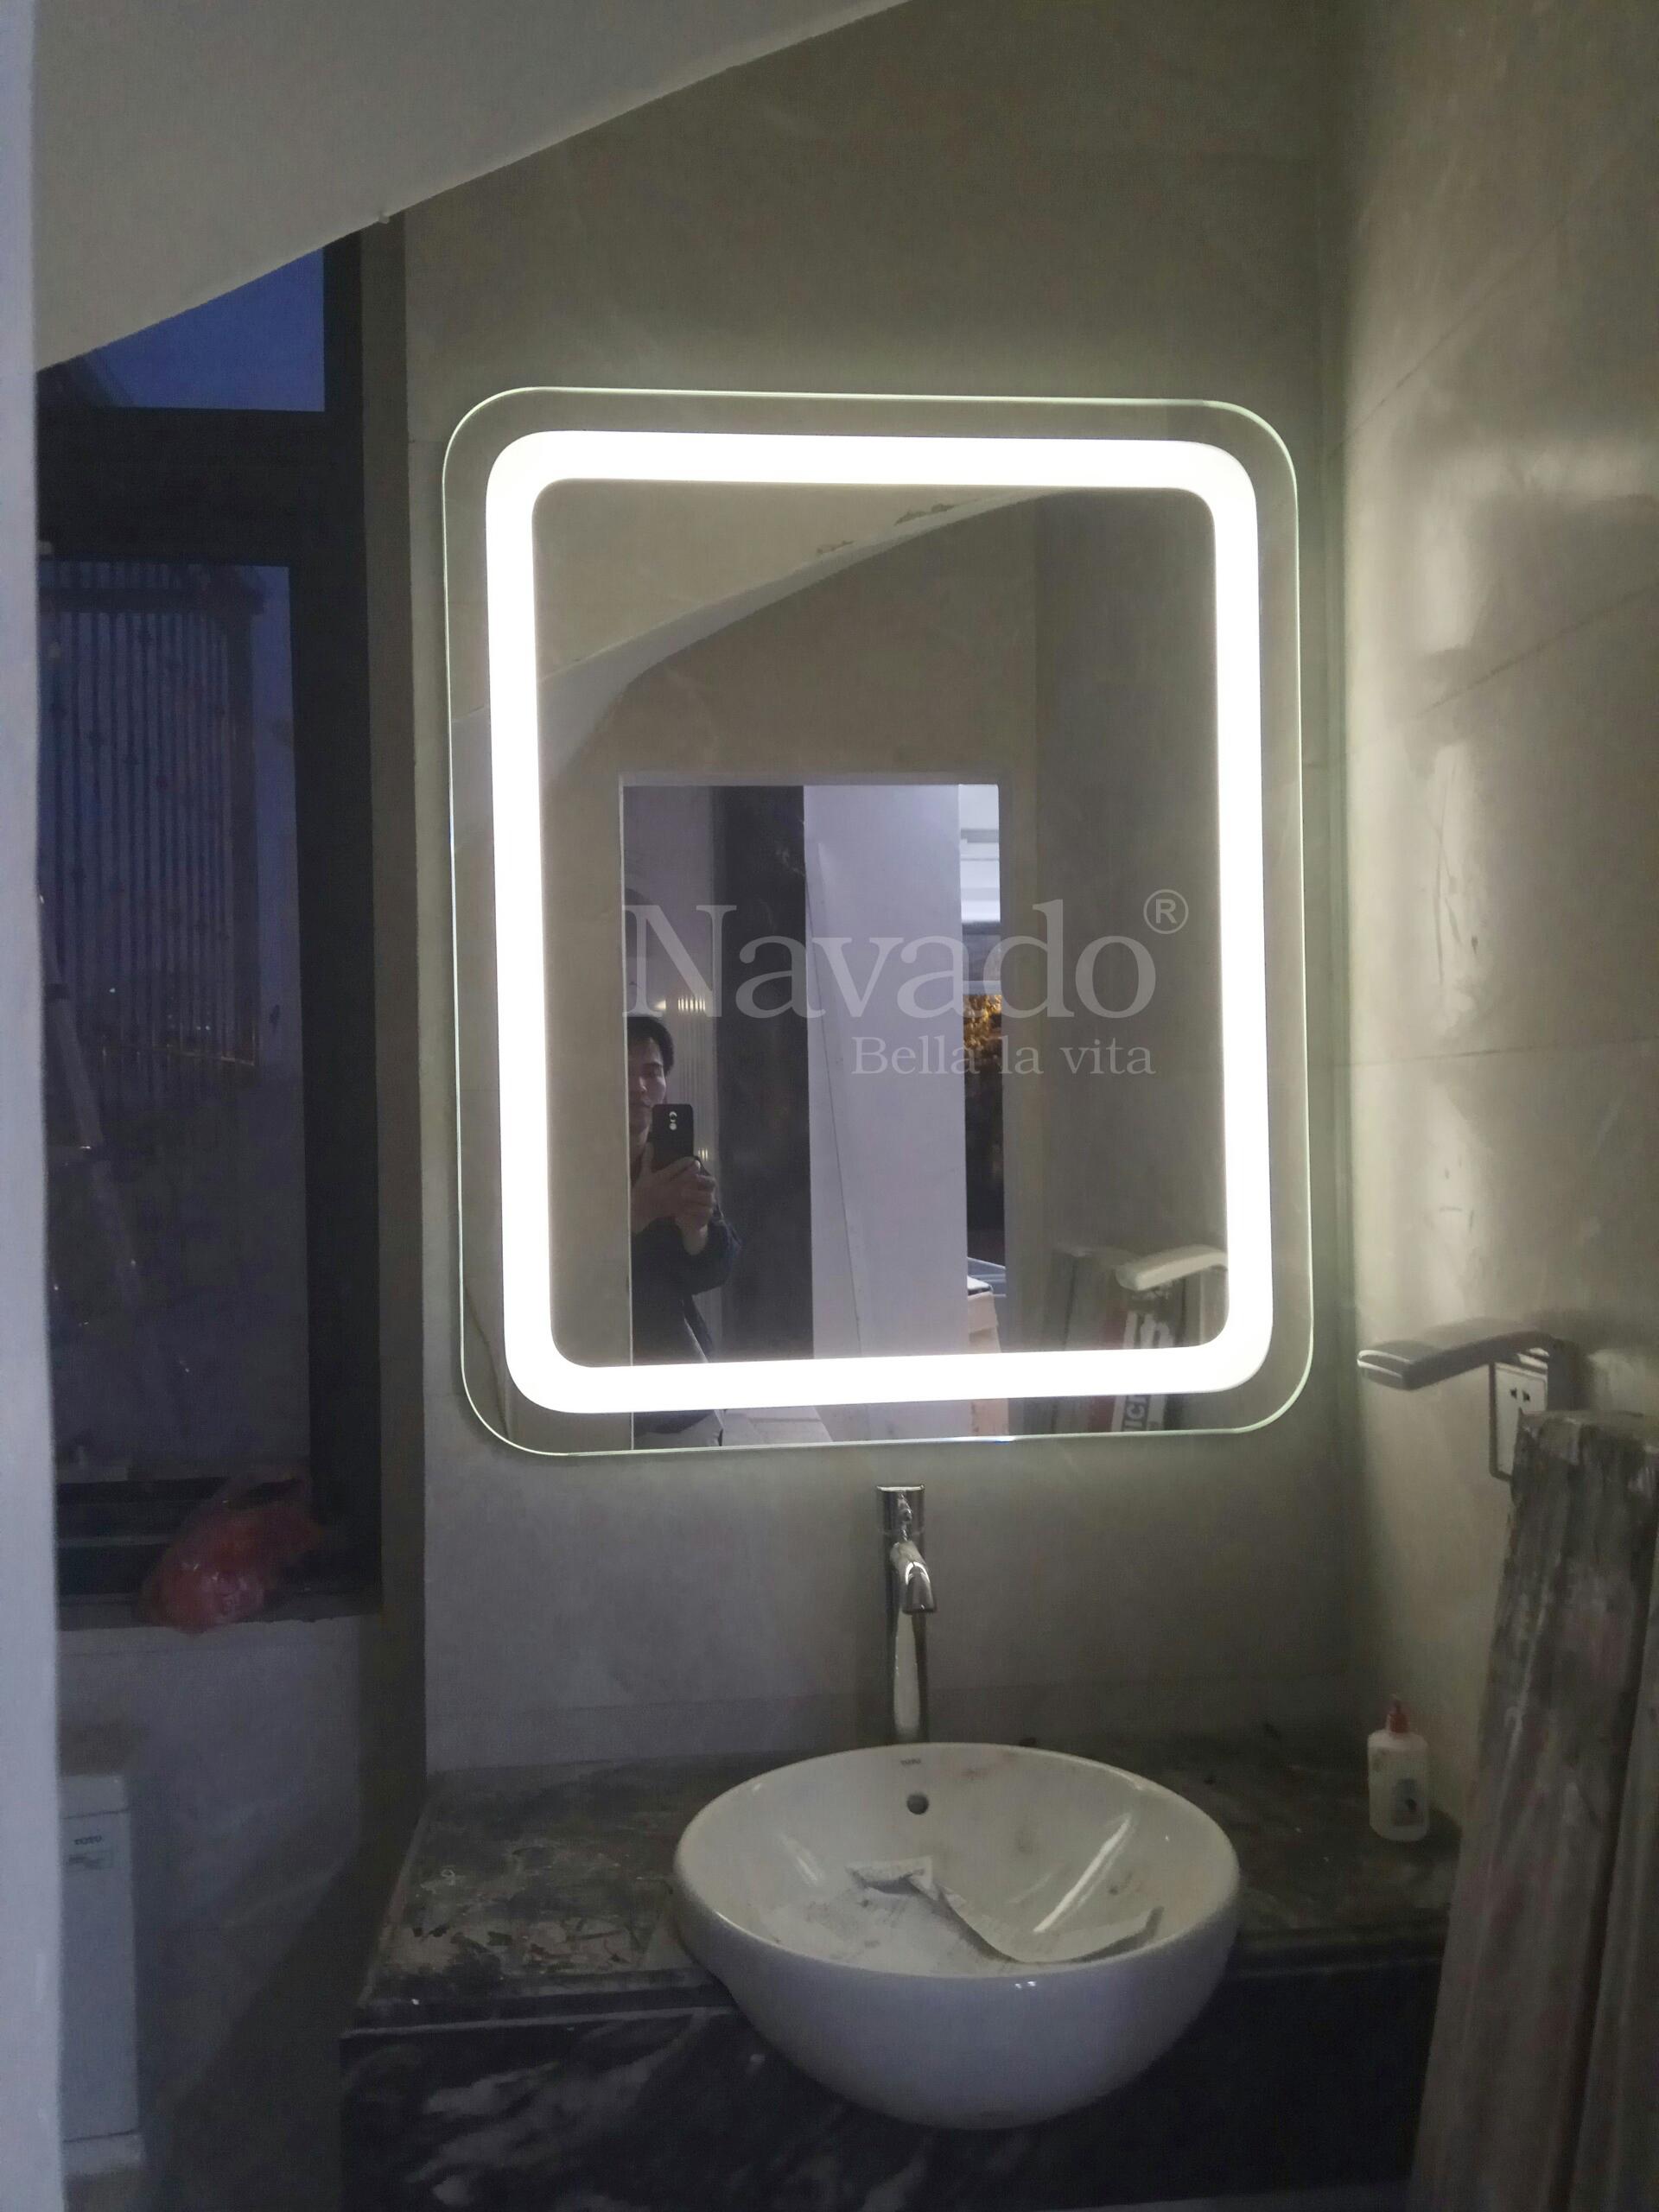 Gương đèn led phòng tắm sang trọng là giải pháp hoàn hảo để bạn thư giãn sau một ngày dài làm việc. Những đèn led sáng tạo tạo ra một ánh sáng mềm mại, tạo nên bầu không khí ấm cúng và thư giãn. Hãy xem tận mắt những chi tiết tuyệt vời của gương này.